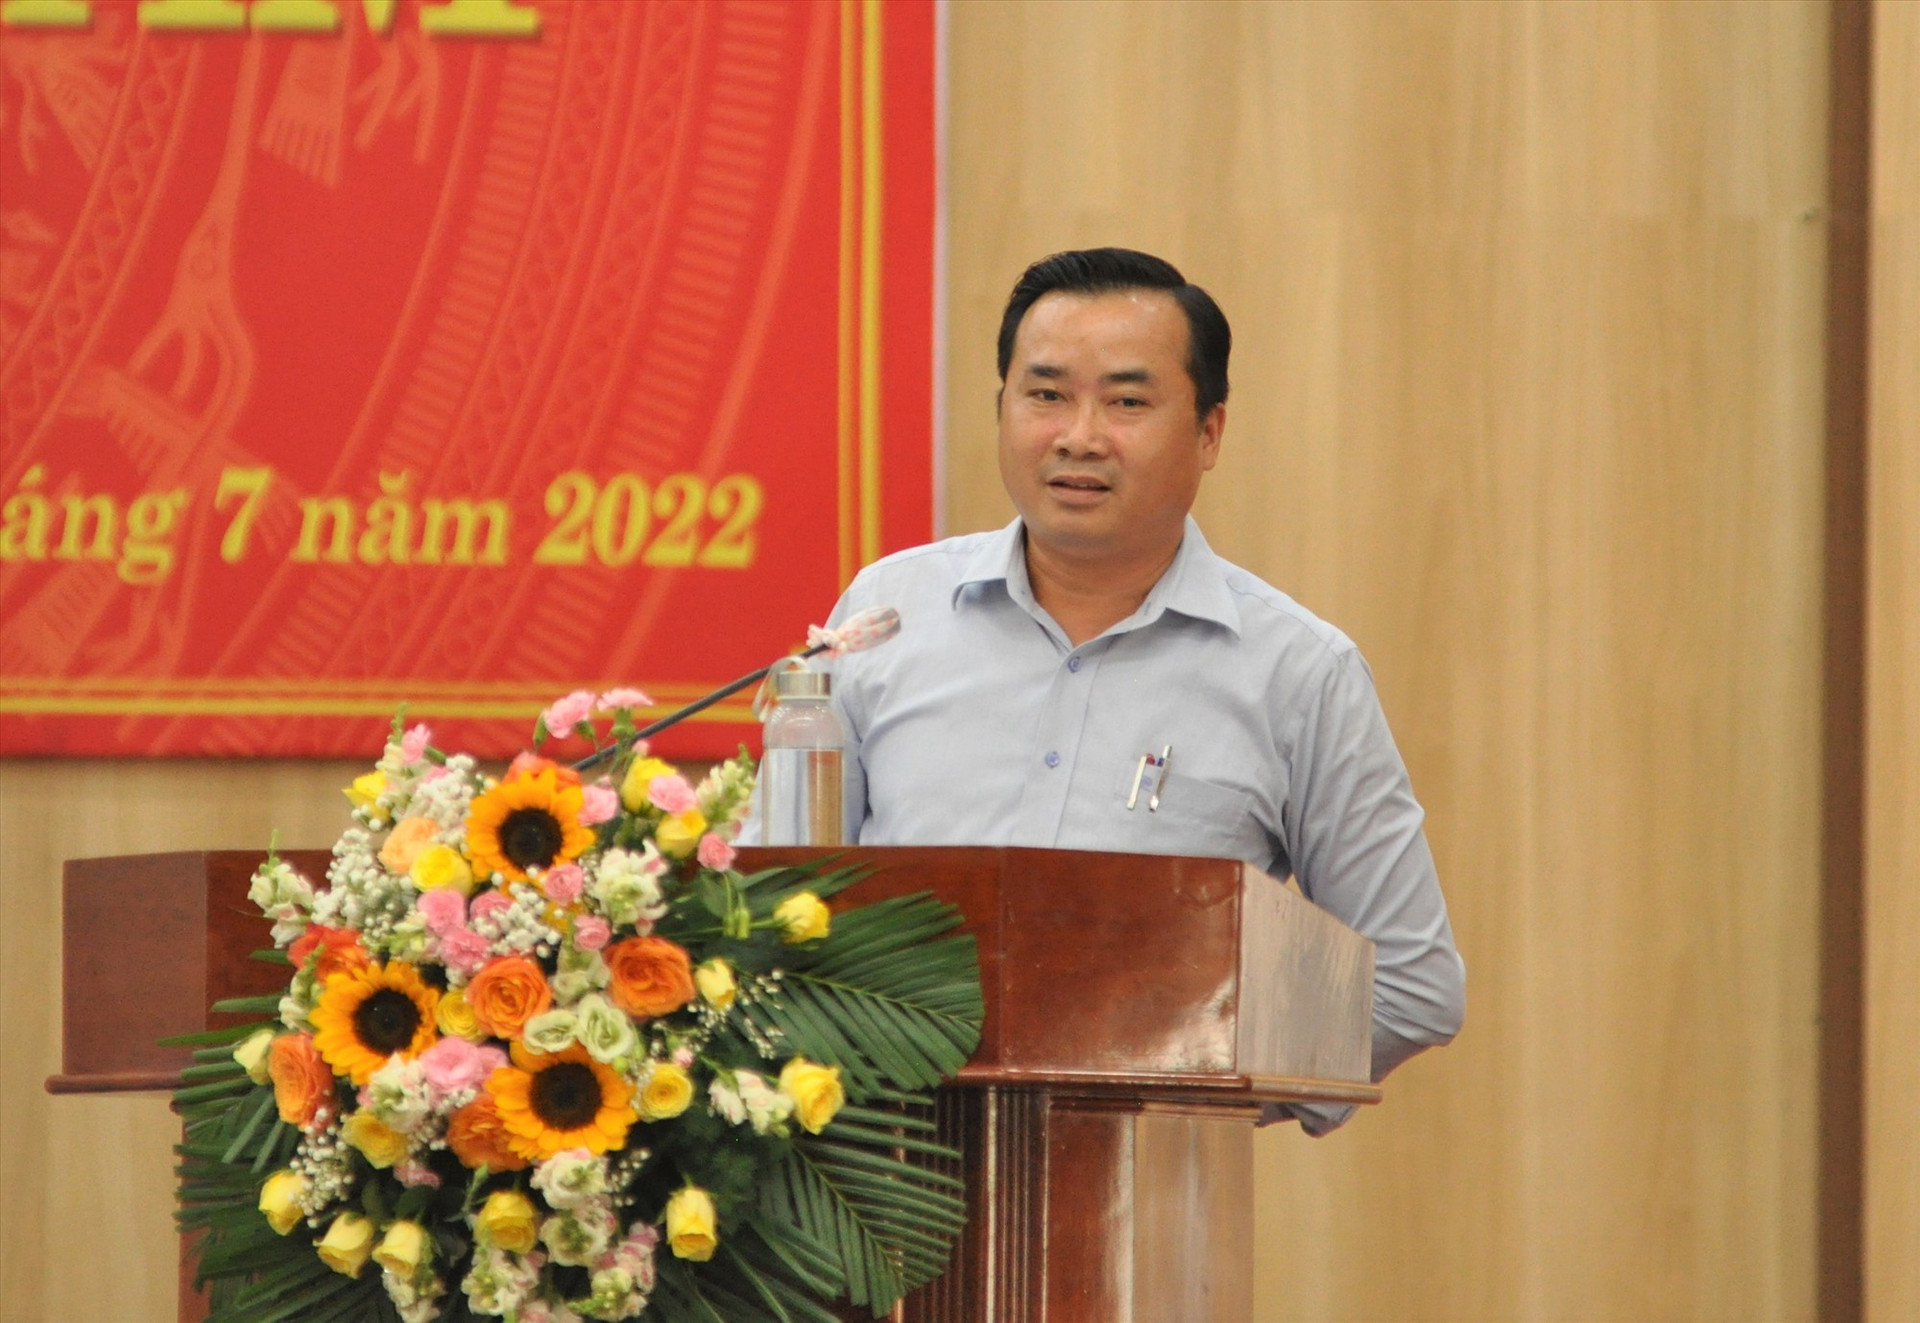 Ông Trần Thanh Dương - Giám đốc Ban quản lý dự án đầu tư xây dựng thành phố trả lời chất vấn về các dự án đầu tư khởi công mới chậm. Ảnh: X.P